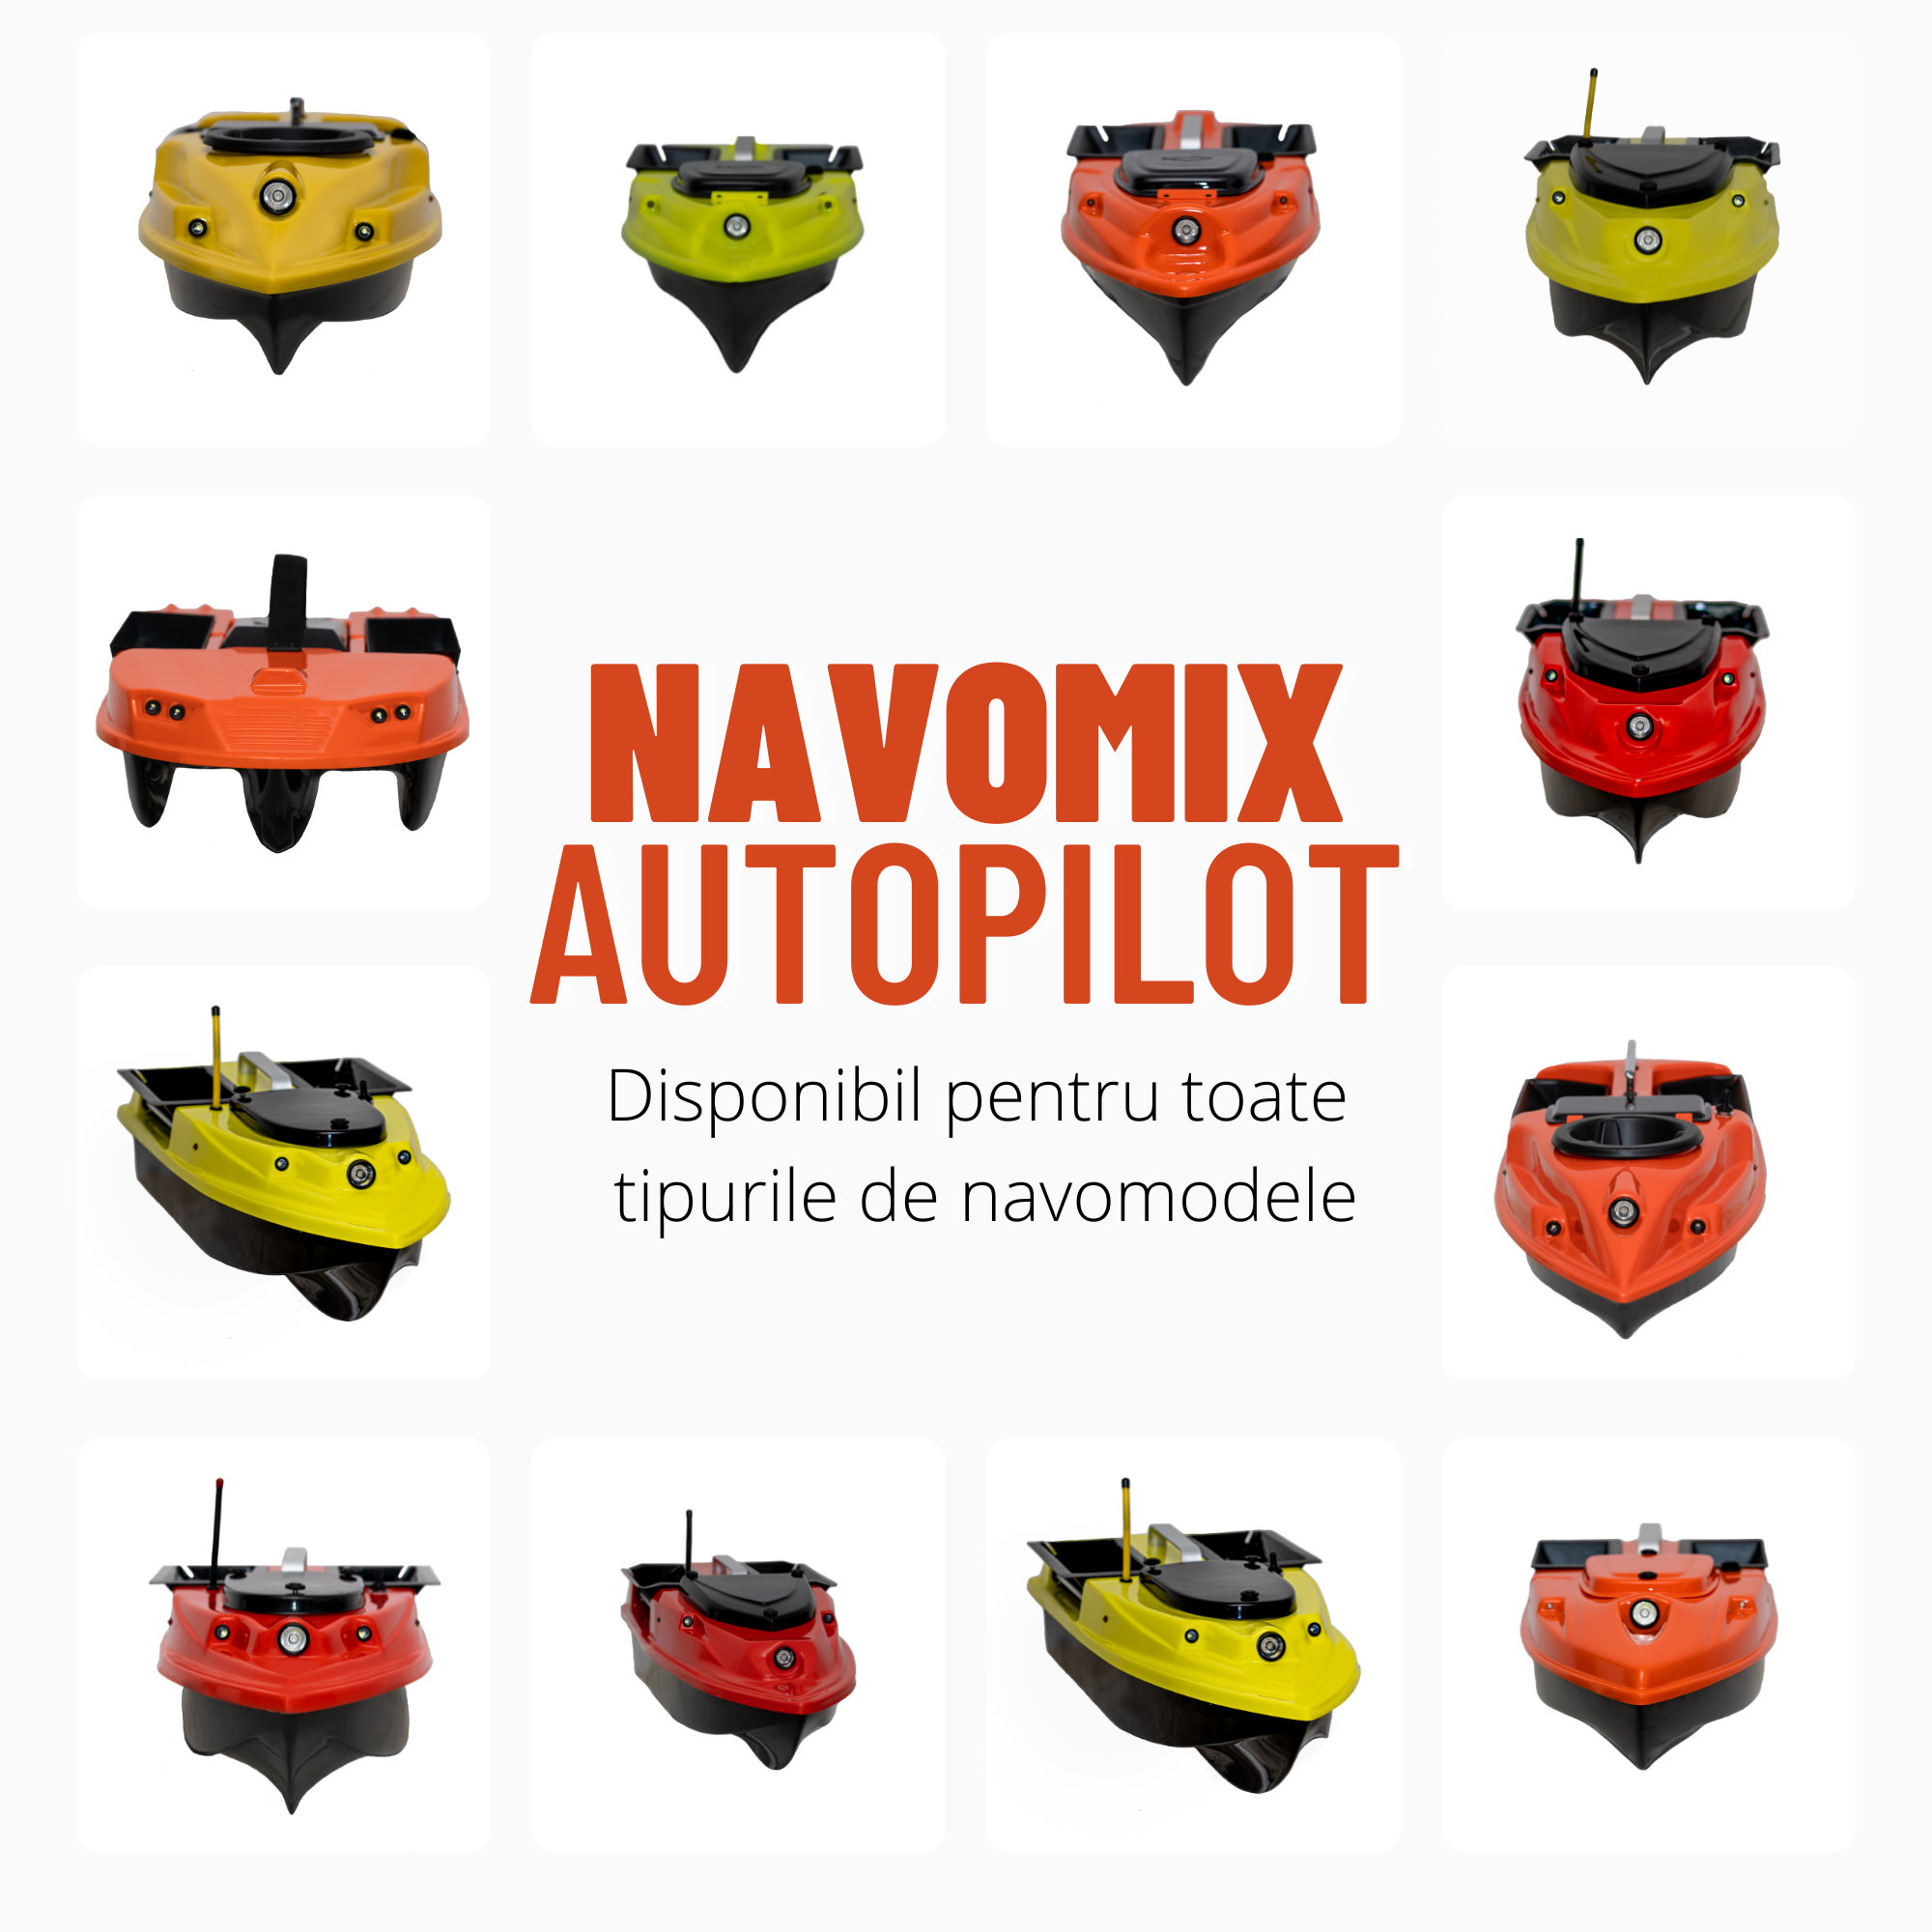 Incearca noul Autopilot de la Navomix